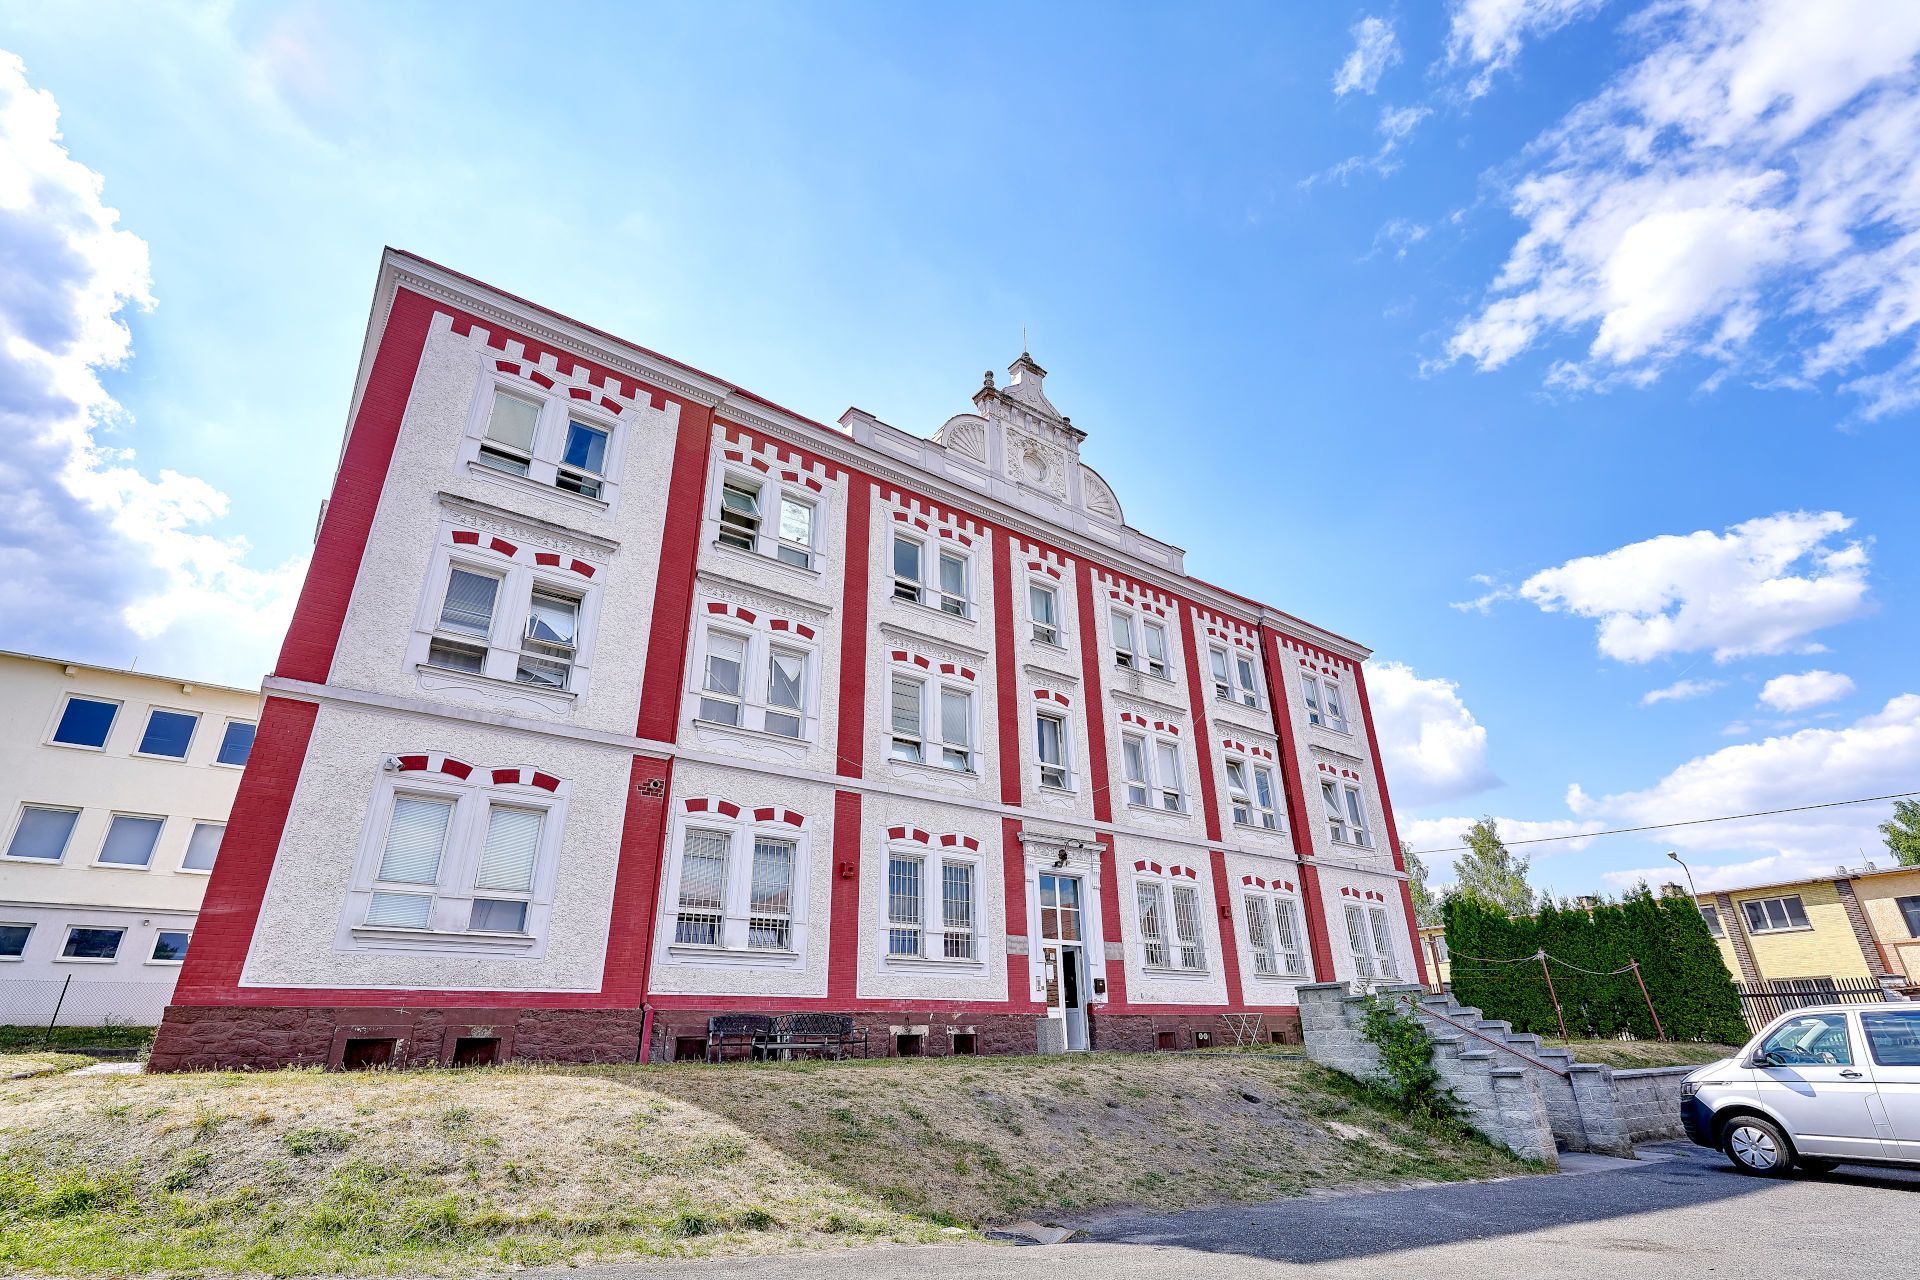  Ubytovna Tovární v Horní Bříze